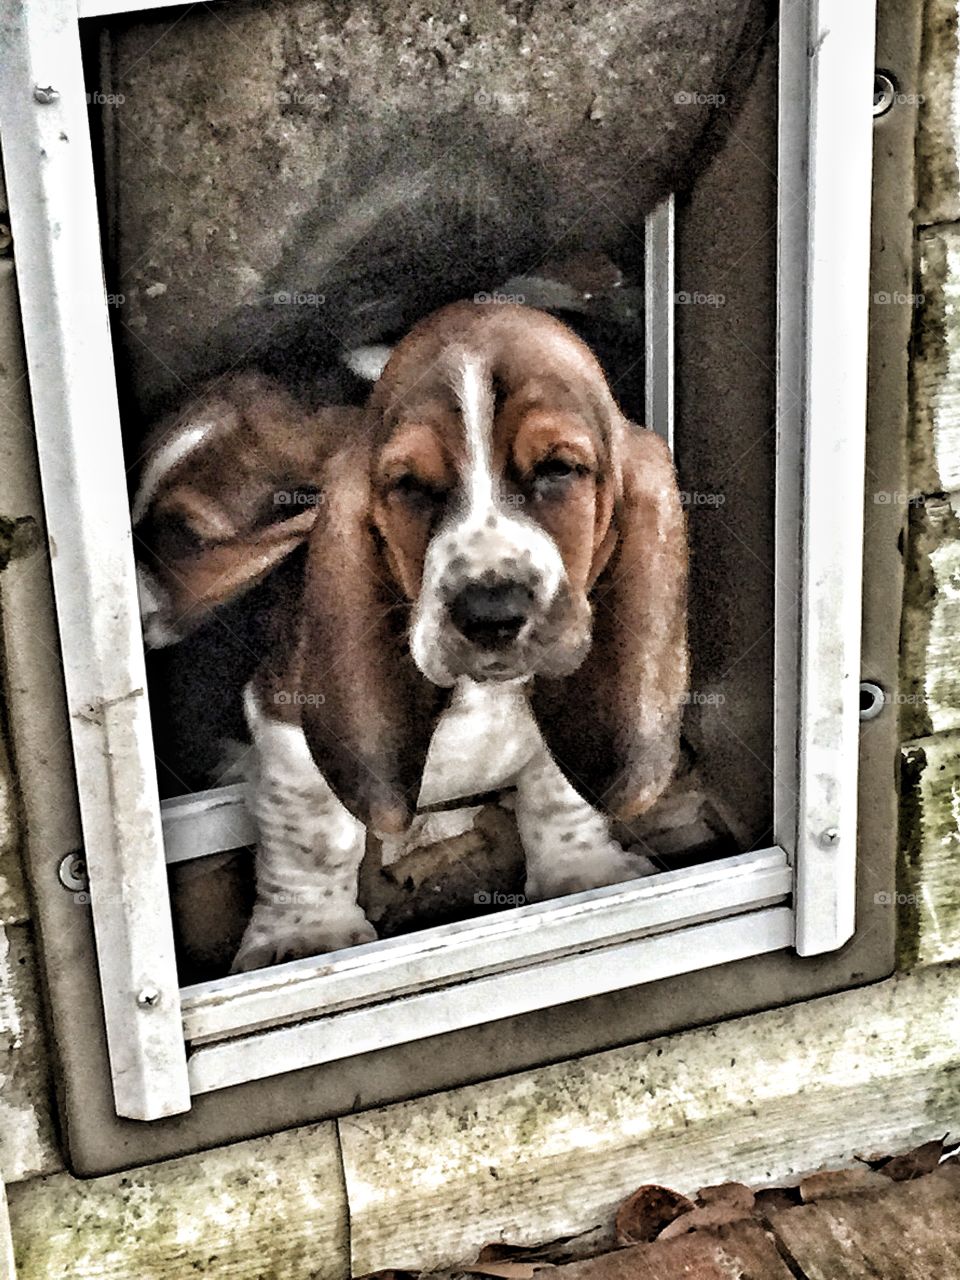 Bassett hound standing in doggy door